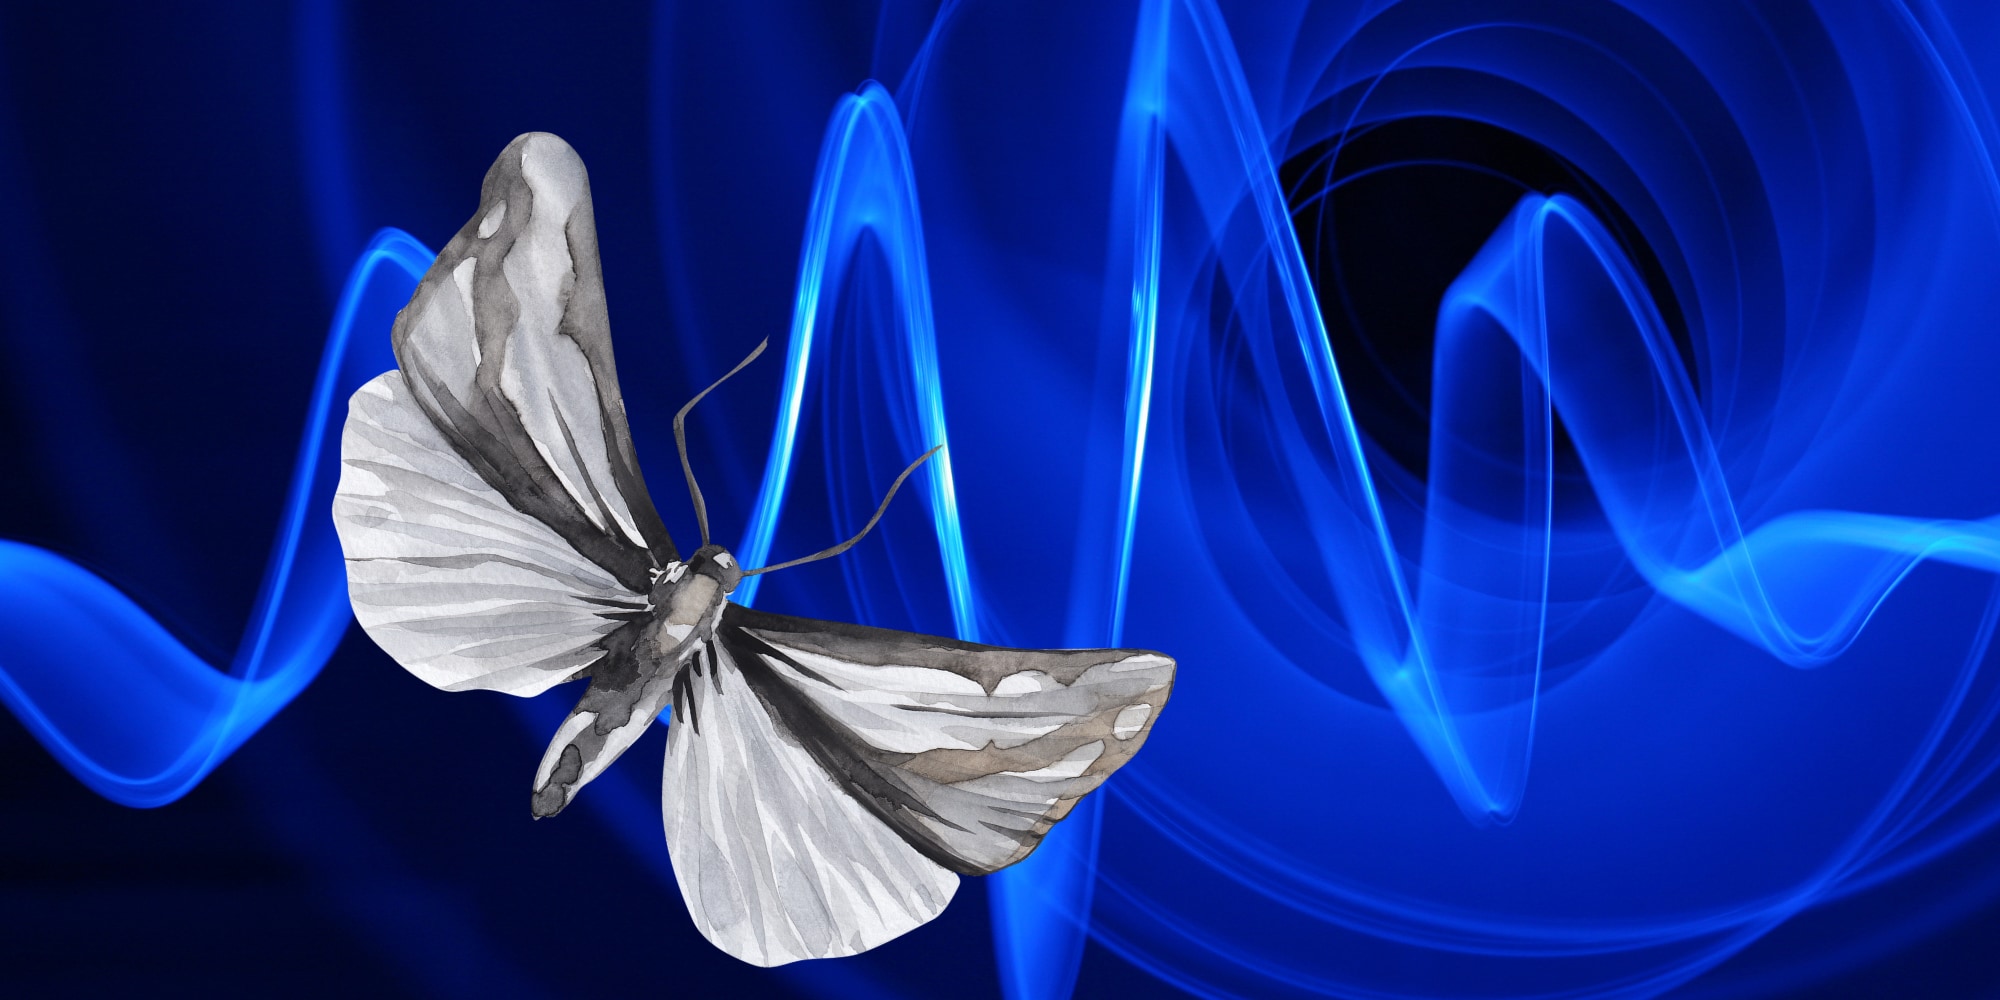 蛾の音源探知が新しい指向性マイクの開発に役立つかも